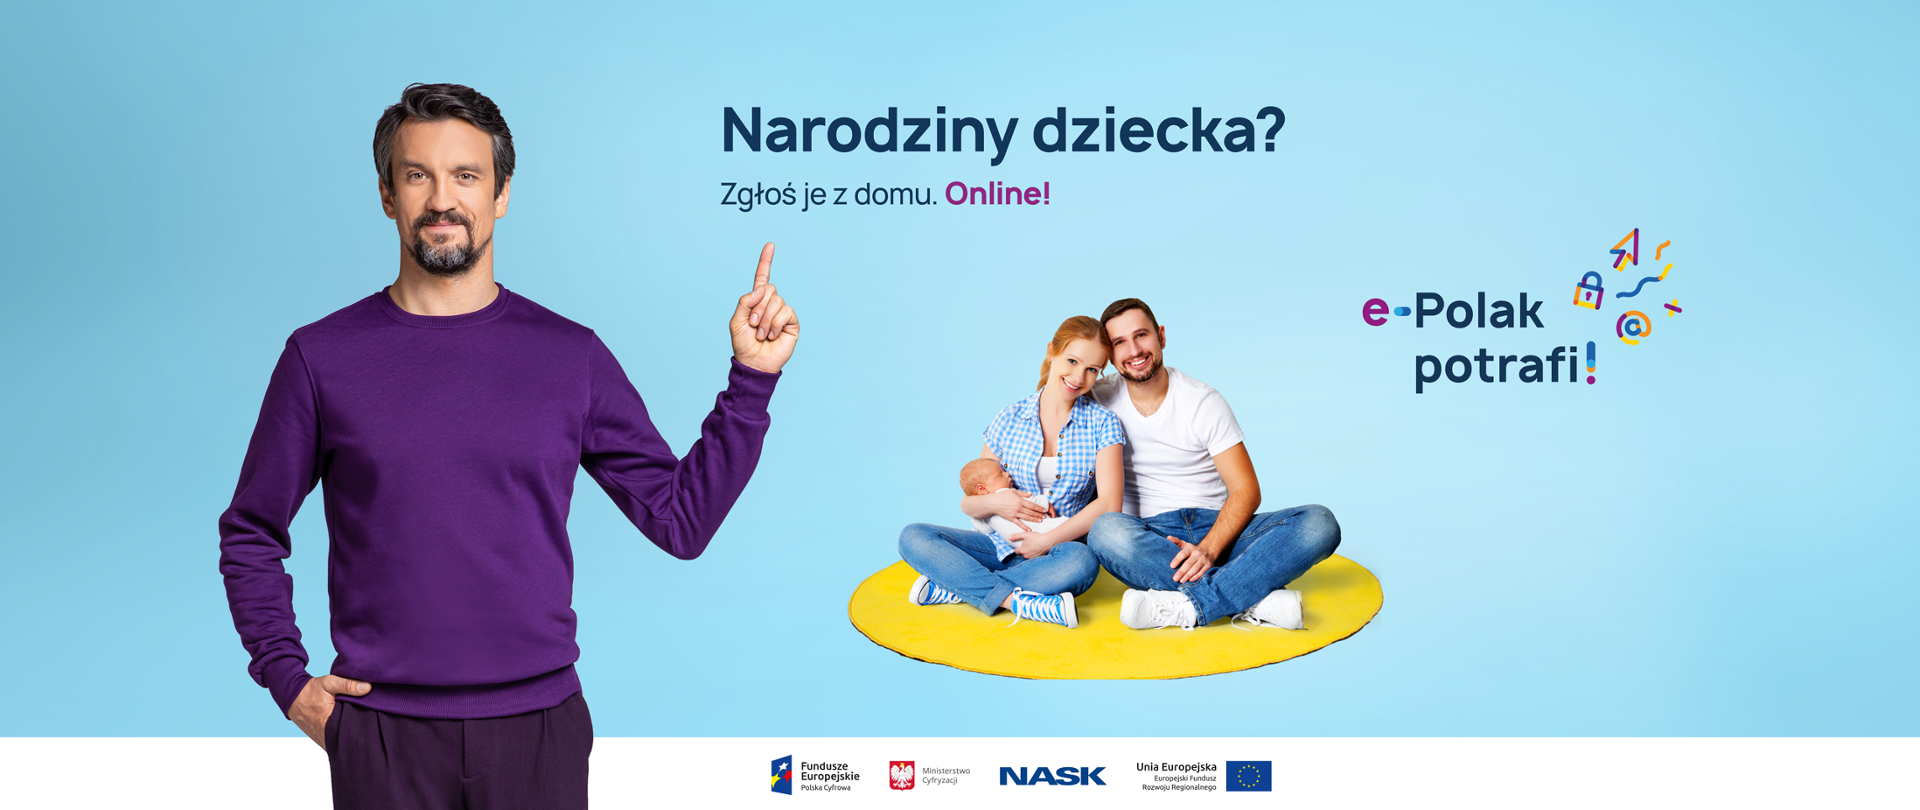 Po lewej stronie - Michał Czernecki wskazujący palcem lewej dłoni na tekst "Narodziny dziecka? Zgłoś je z domu. Online!". Na środku siedząca na podłodze uśmiechnięta para. Kobieta tuli w rękach niemowlę. Po prawej stronie - logo kampanii "e-Polak potrafi!". 